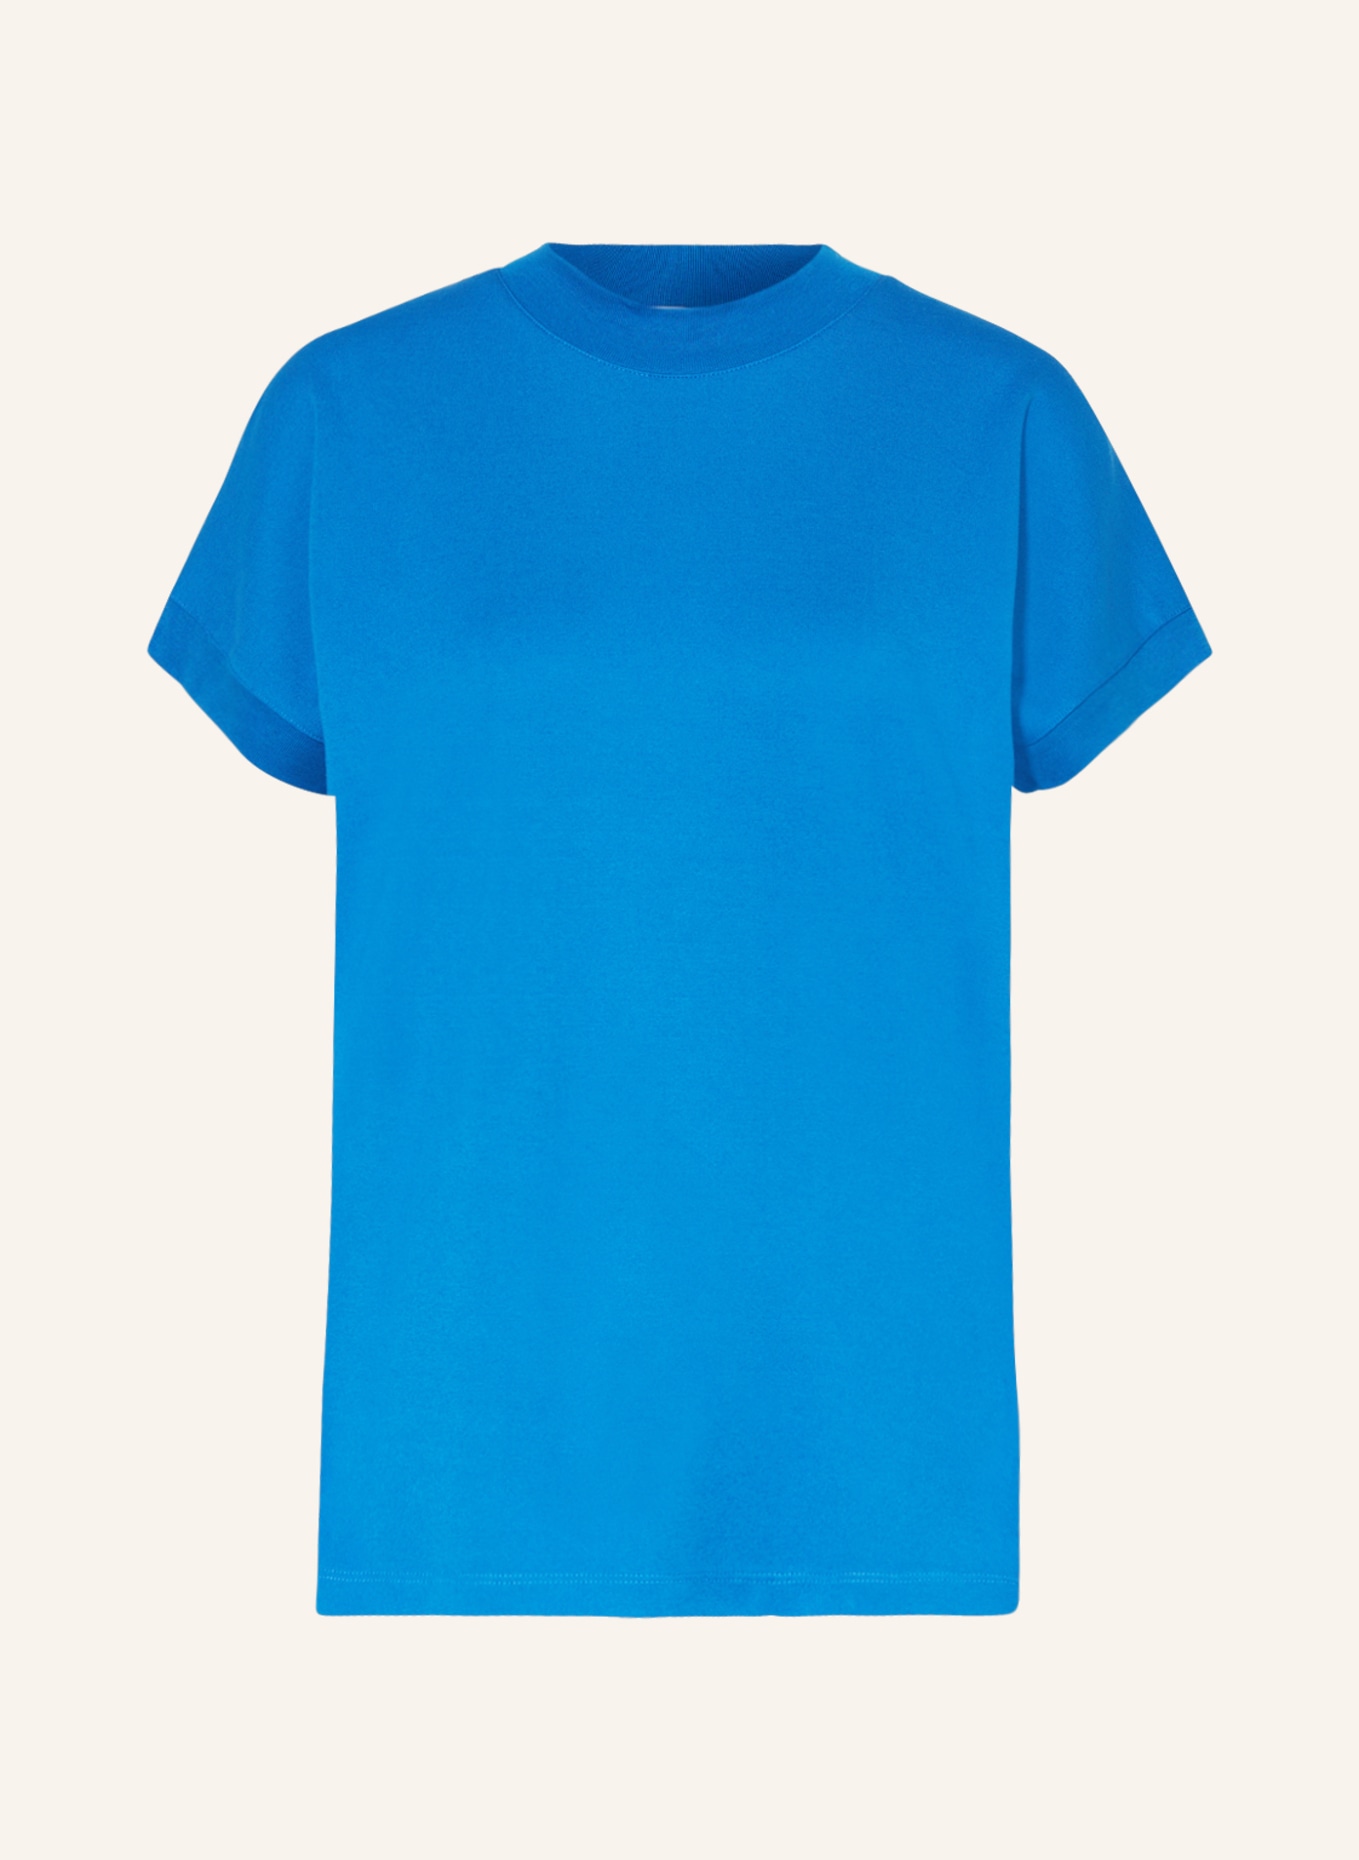 MRS & HUGS T-shirt, Color: BLUE (Image 1)